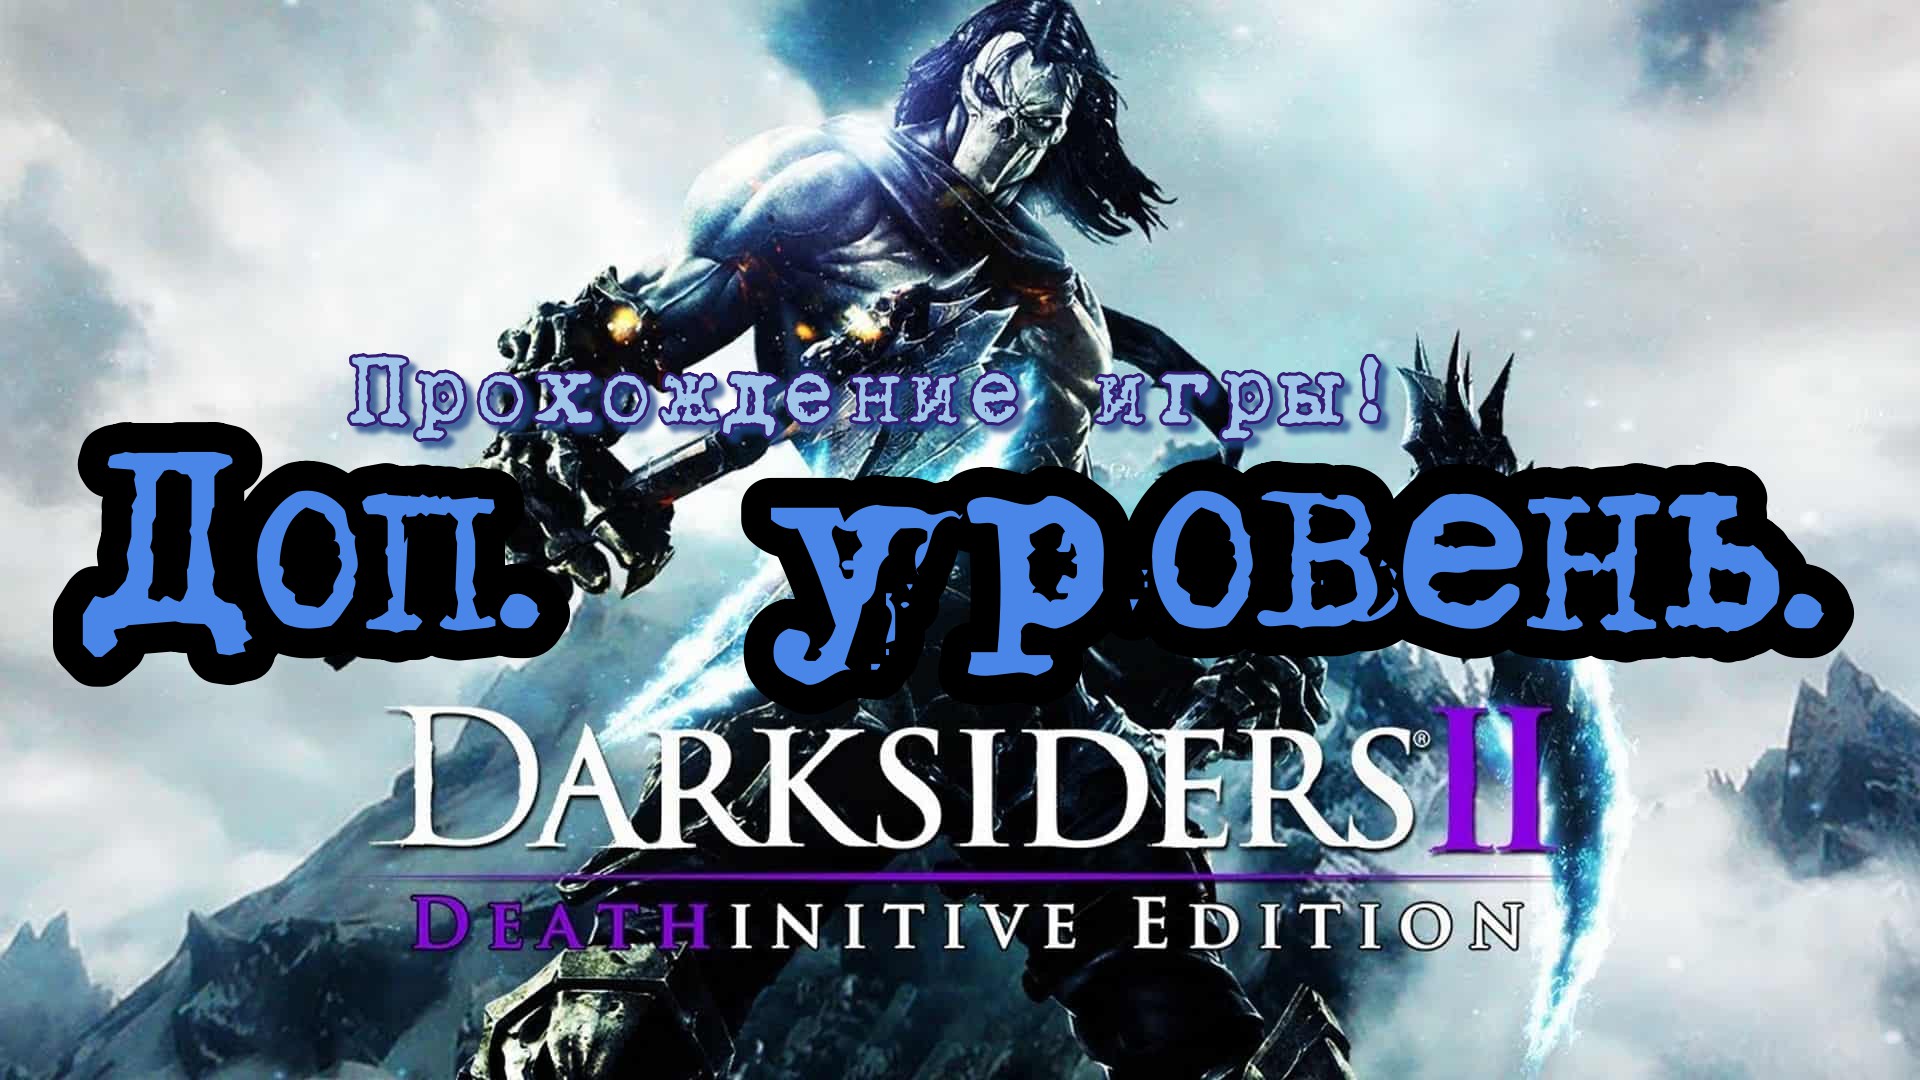 Прохождение игры - Darksiders 2 # 6. (Кузница в бездне) PC - HD - Full 1080p.